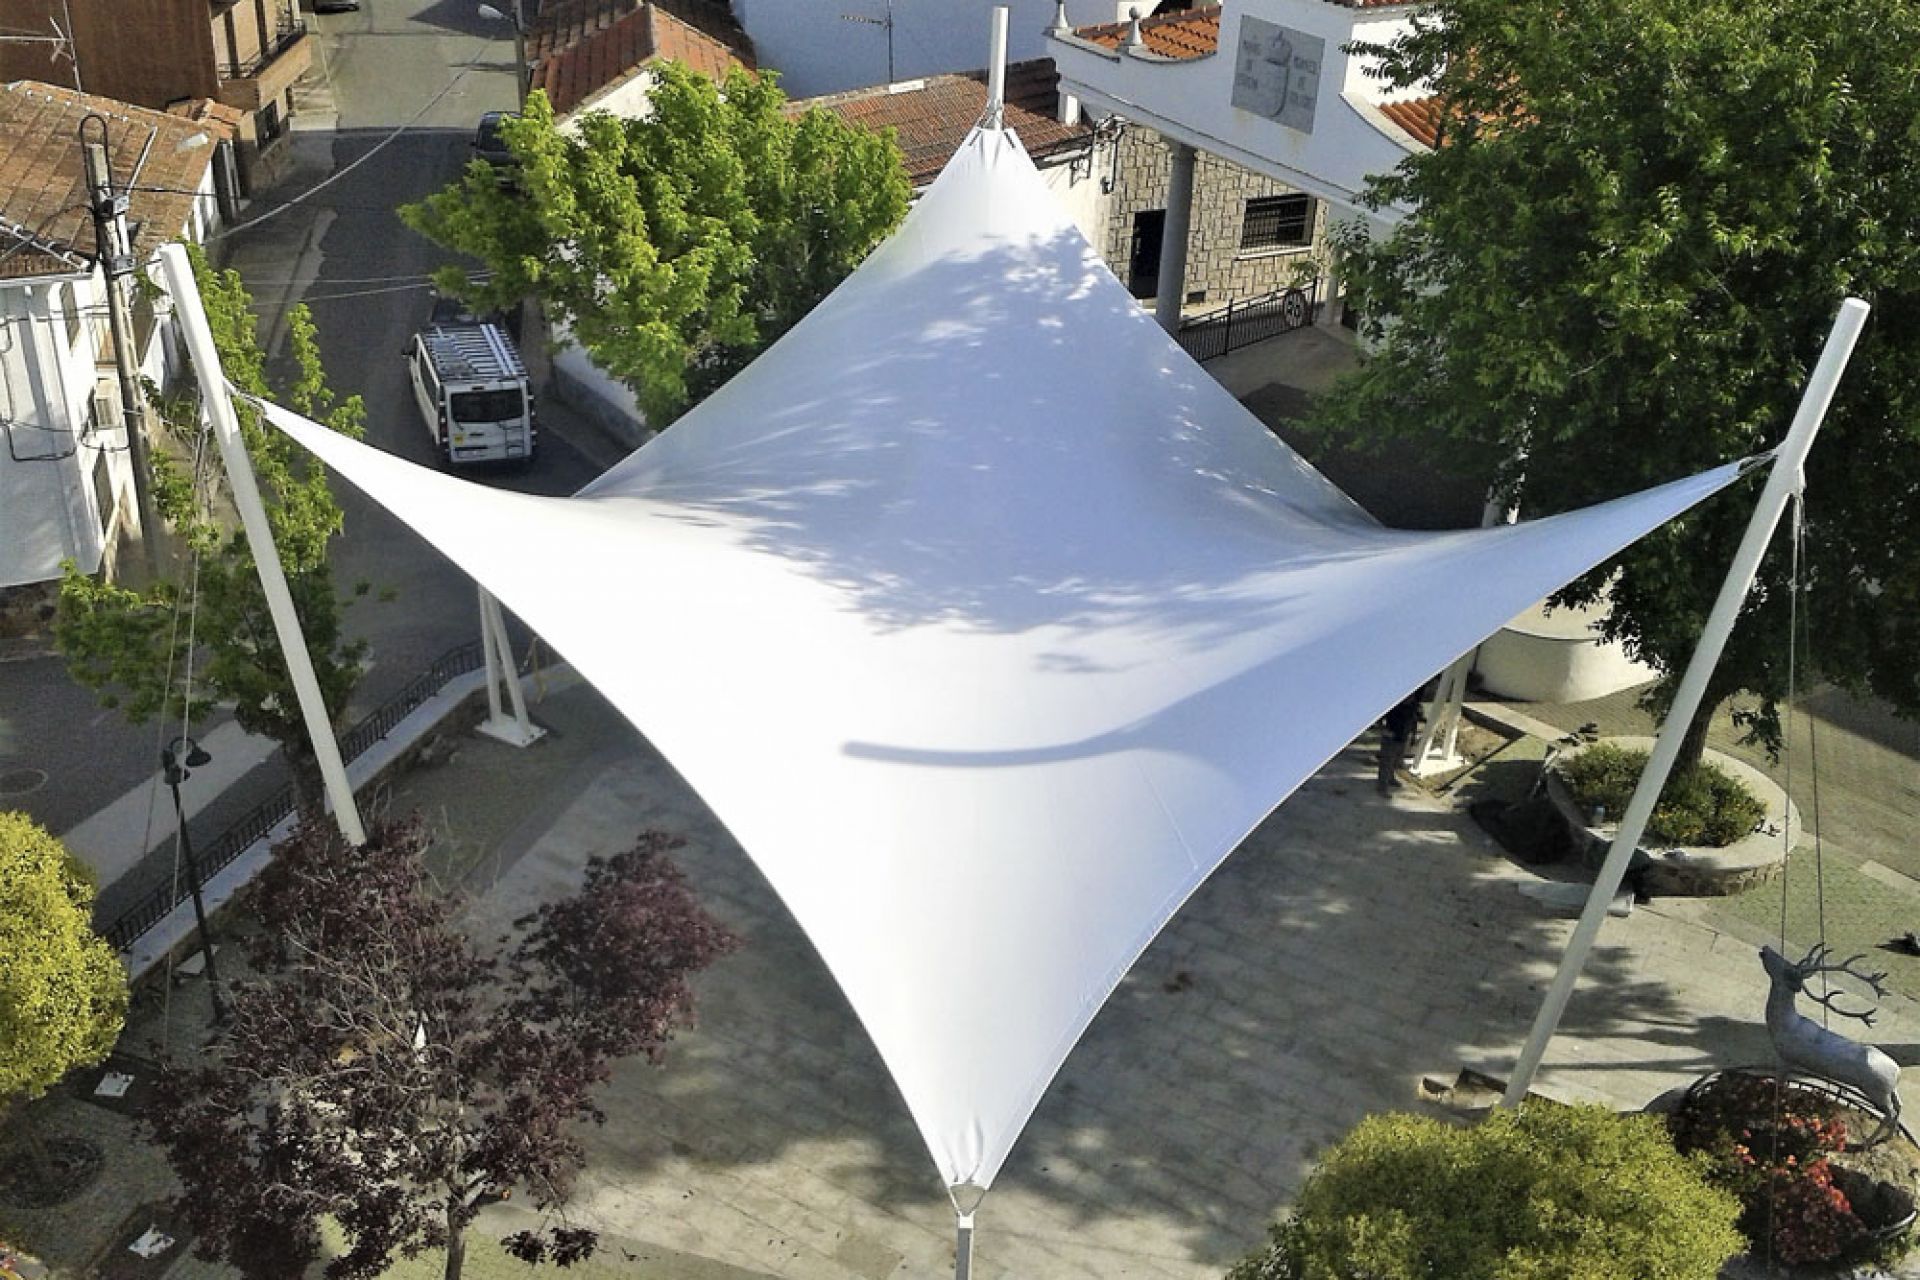 cubierta de lona tensada en forma de paraboloide hiperbólico que cubre la plaza del ayuntamiento de 